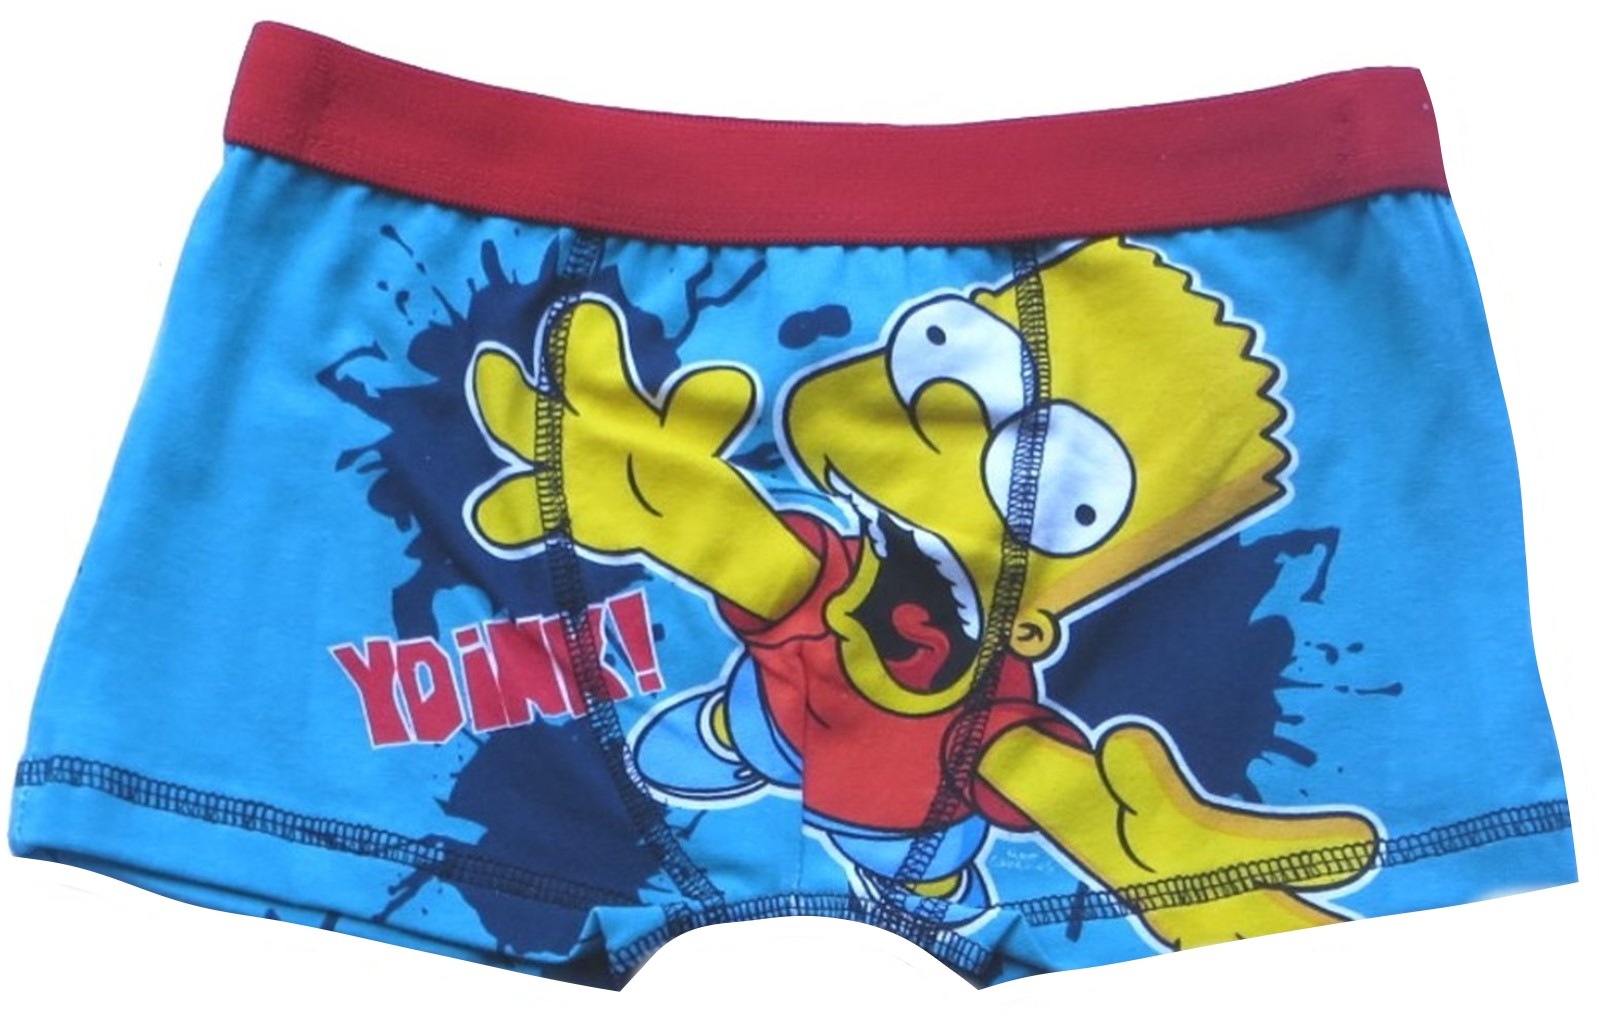 BBOX1 Simpsons Boxer Shorts Front.JPG  by Thingimijigs